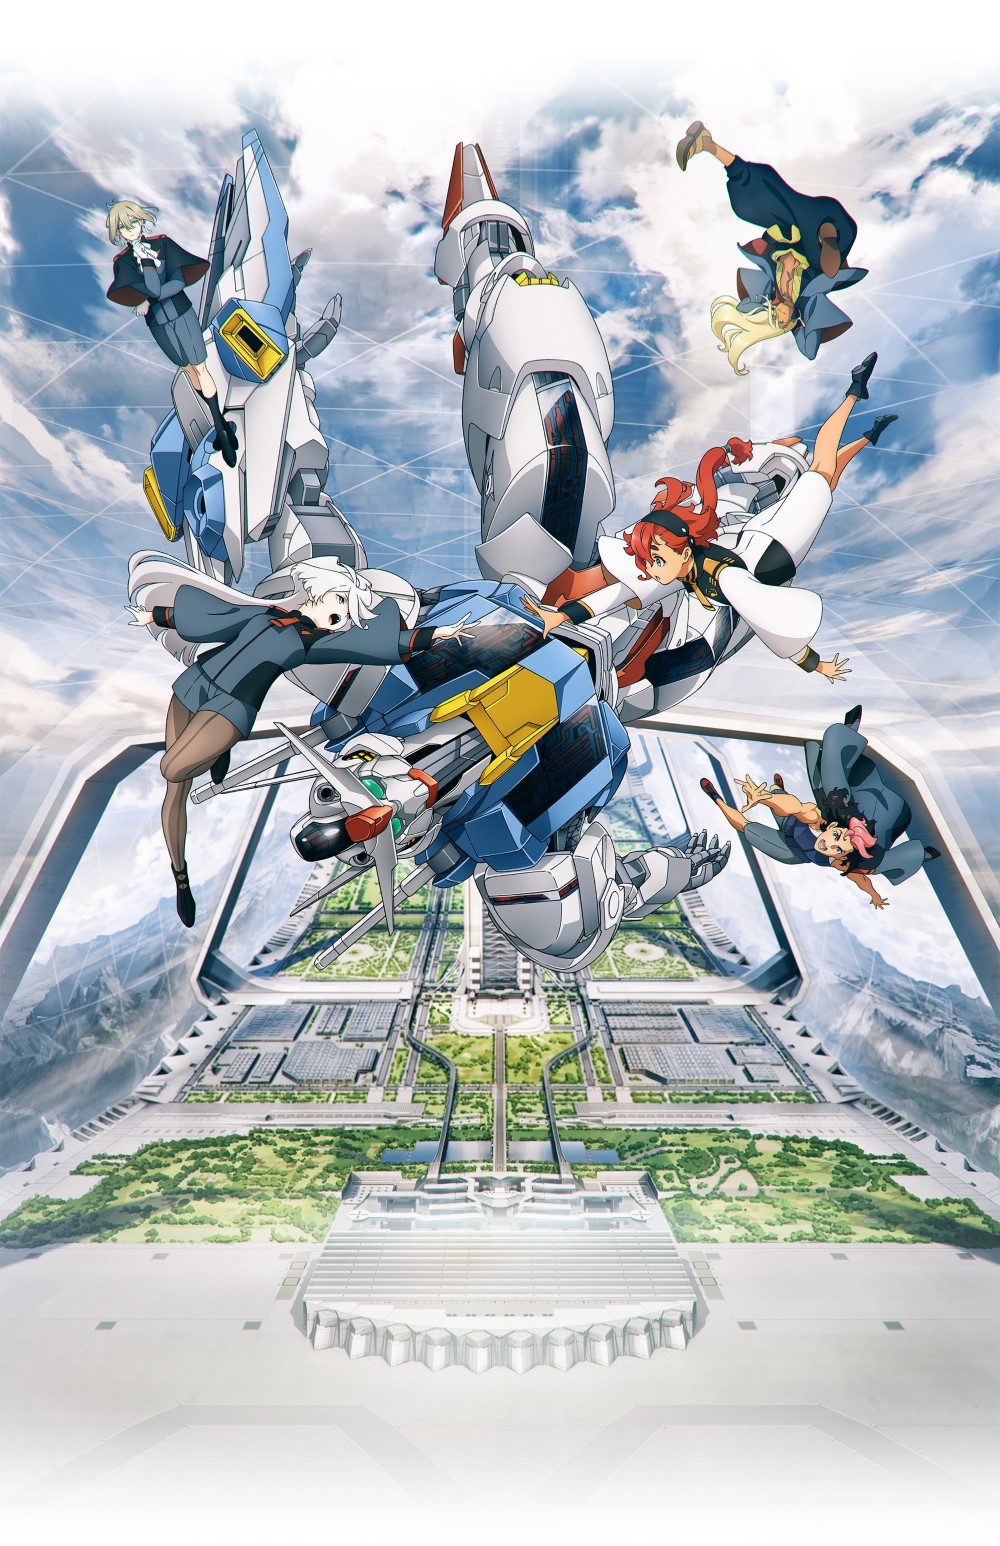 【喵萌奶茶屋】[机动战士高达 水星的魔女 序幕/Mobile Suit Gundam THE WITCH FROM MERCURY PROLOGUE][先行版][1080p][简体][v2][招募翻译]插图icecomic动漫-云之彼端,约定的地方(´･ᴗ･`)